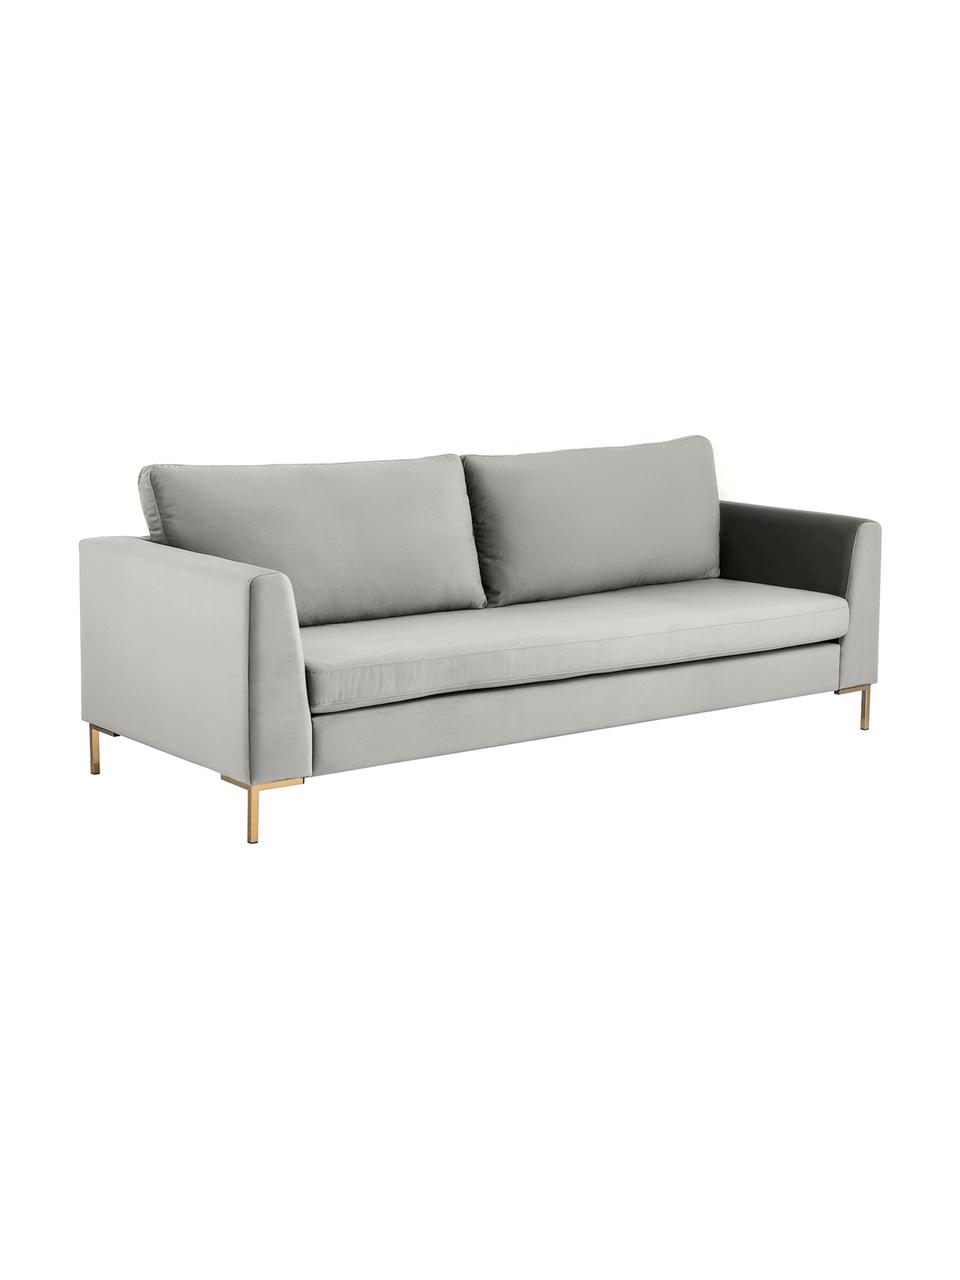 Sofa z aksamitu z metalowymi nogami Luna (3-osobowa), Tapicerka: aksamit (poliester) Dzięk, Nogi: metal galwanizowany, Jasnoszary aksamit, S 230 x G 95 cm